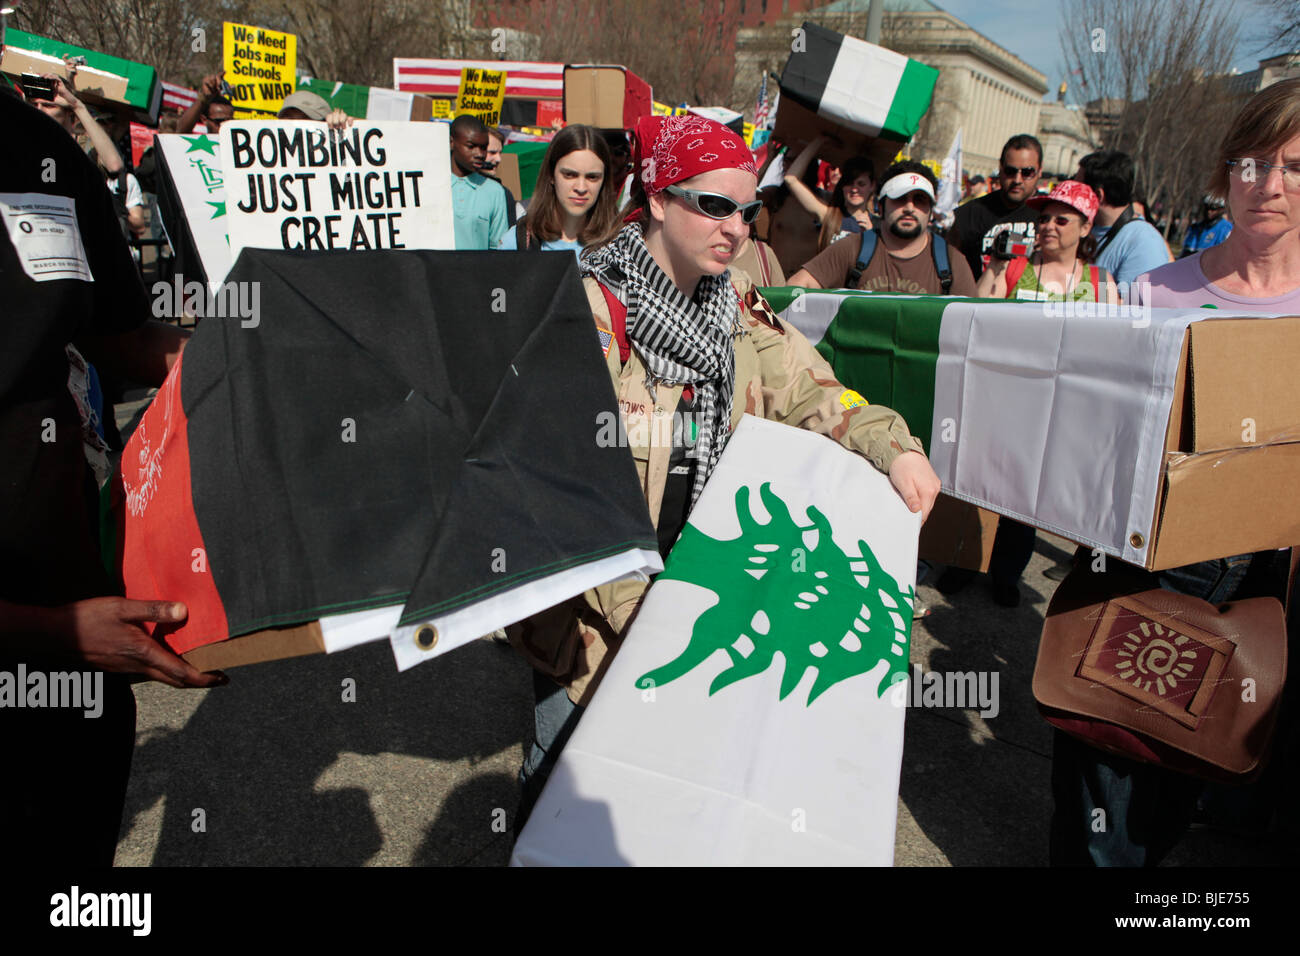 Offrir des manifestants drapés cercueils en carton du pavillon à la Maison Blanche. Manifestation anti-guerre. Marche sur Washington. 20 mars, 2010 Banque D'Images